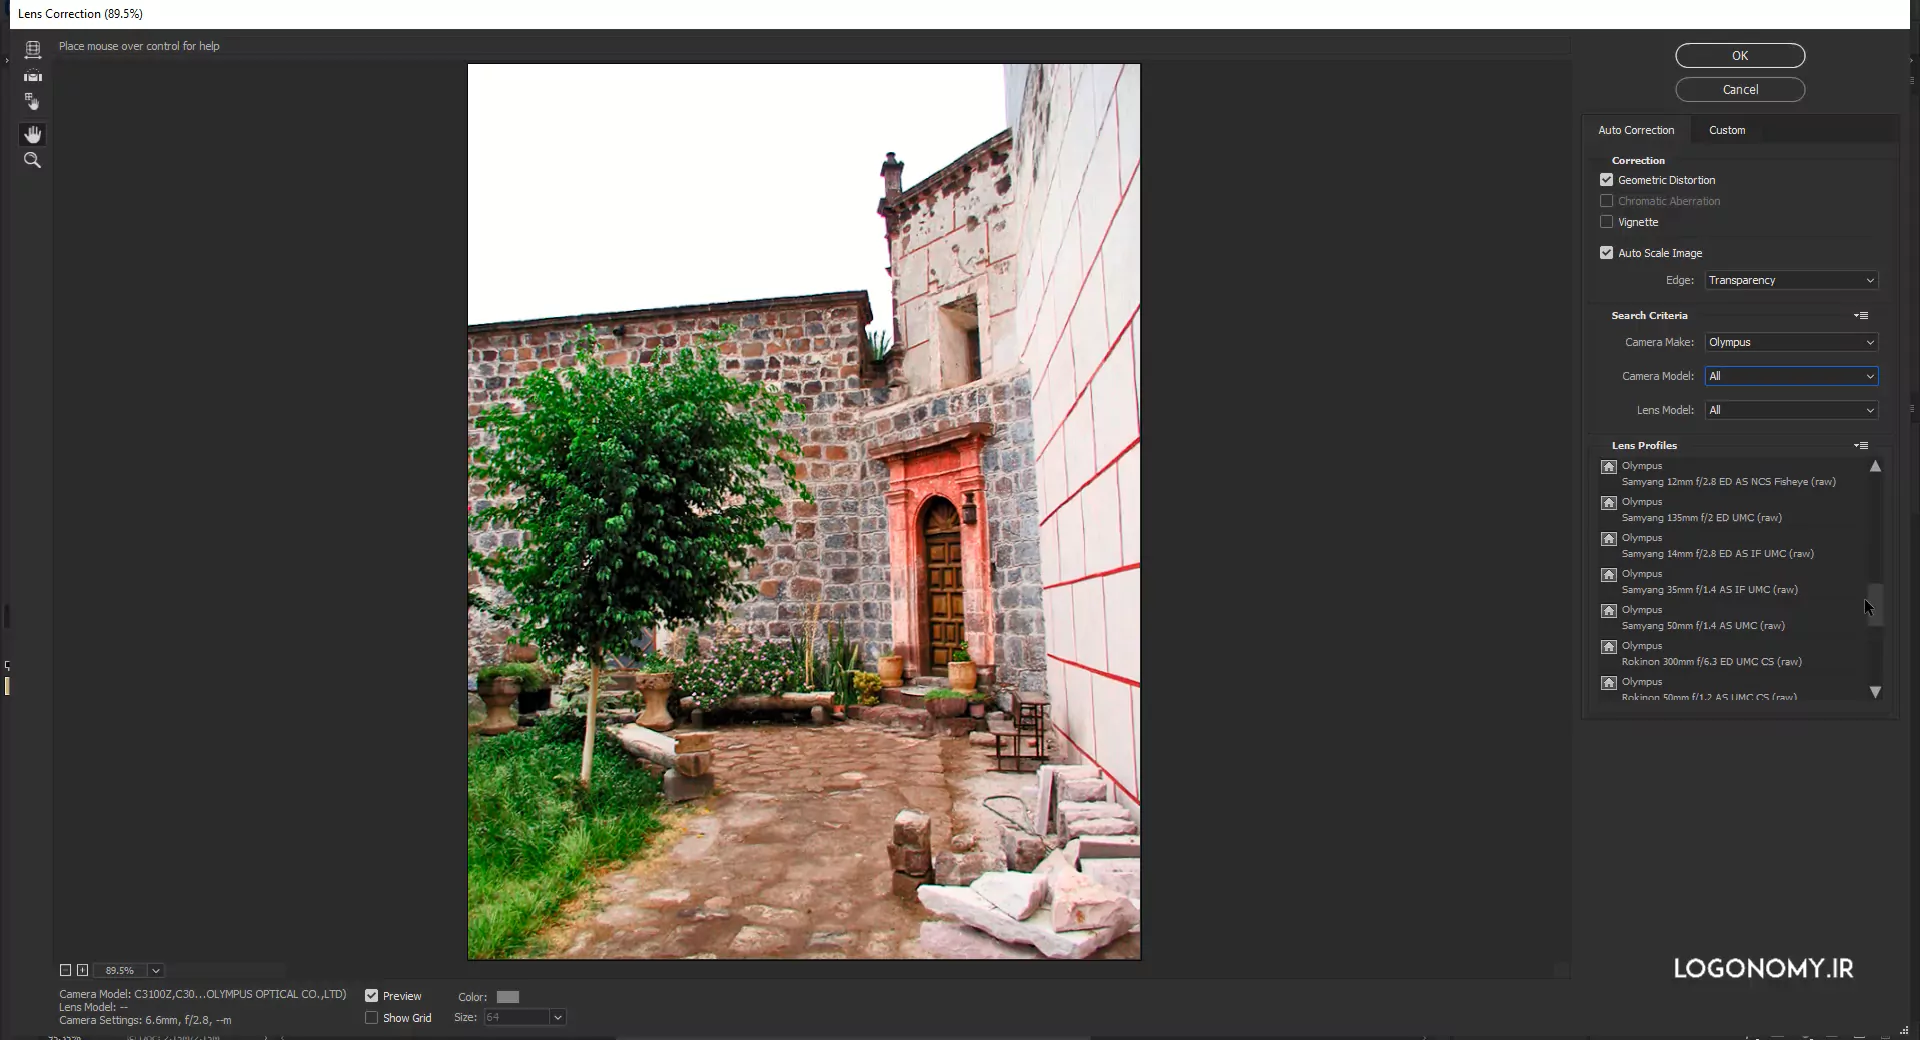 آشنایی با ابزار اصلاح خطای لنز Lens Correction در برنامه فتوشاپ (Photoshop)